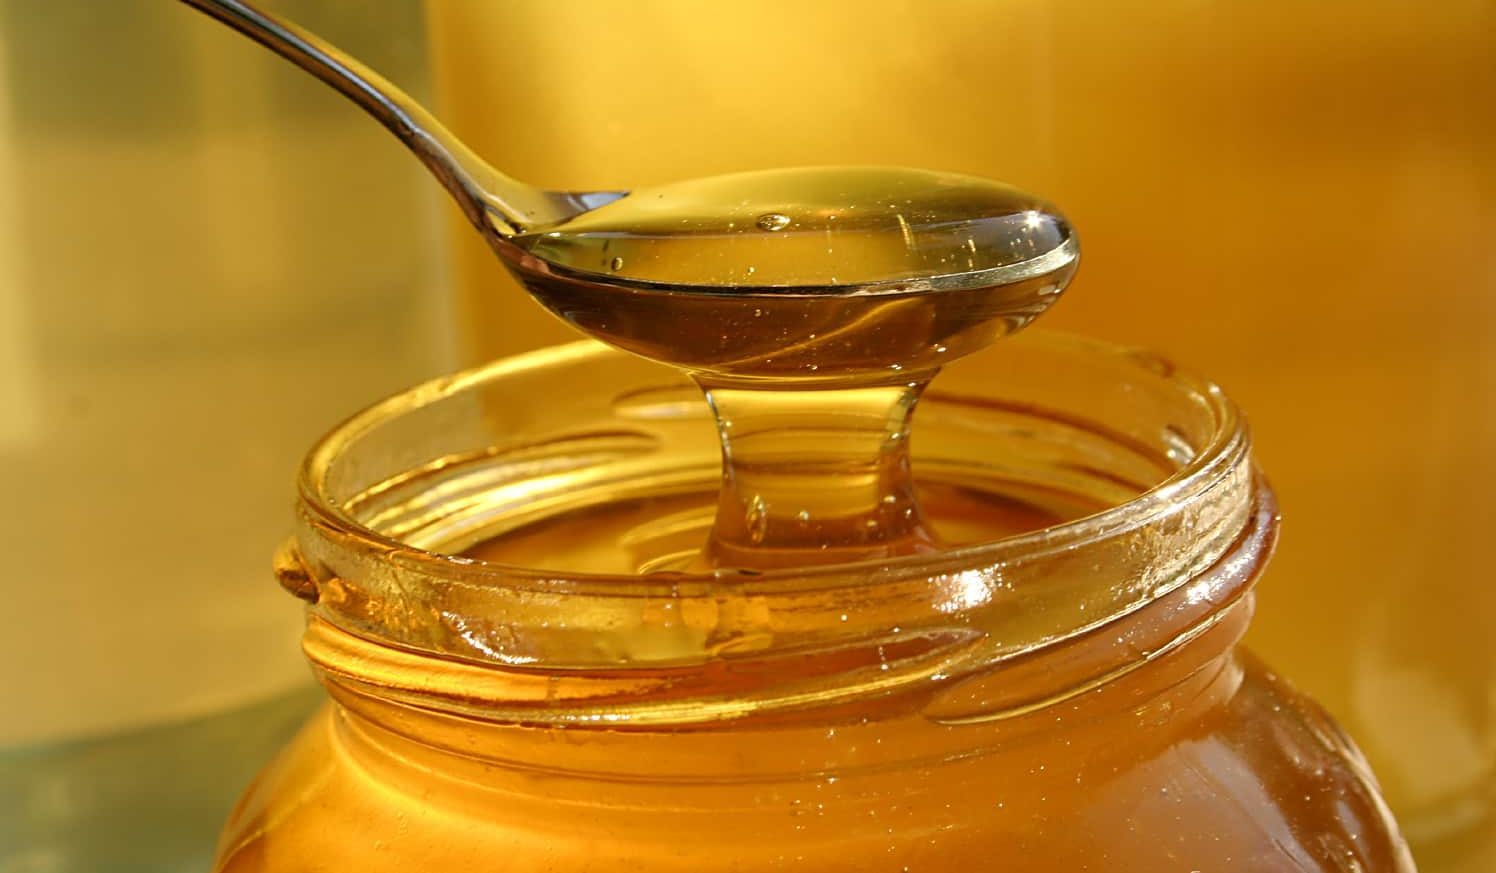 سعر العسل الملكي الماليزي - آراد برندینک